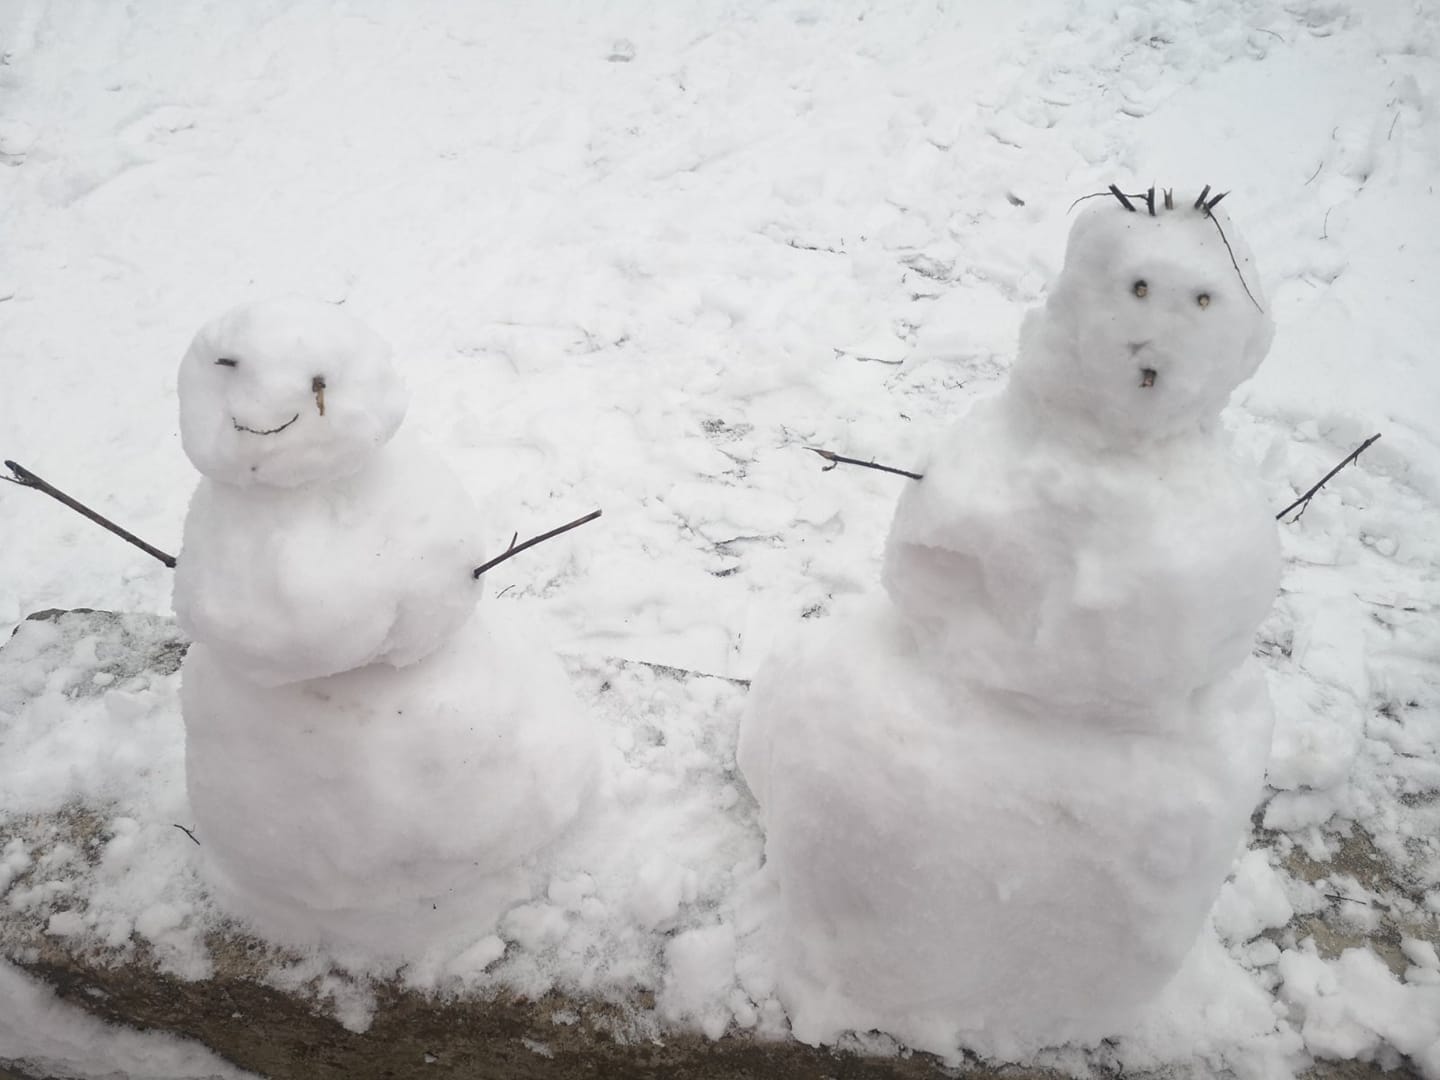 У кого больше и оригинальнее: запорожцы решили "померяться" снеговиками (ФОТО)